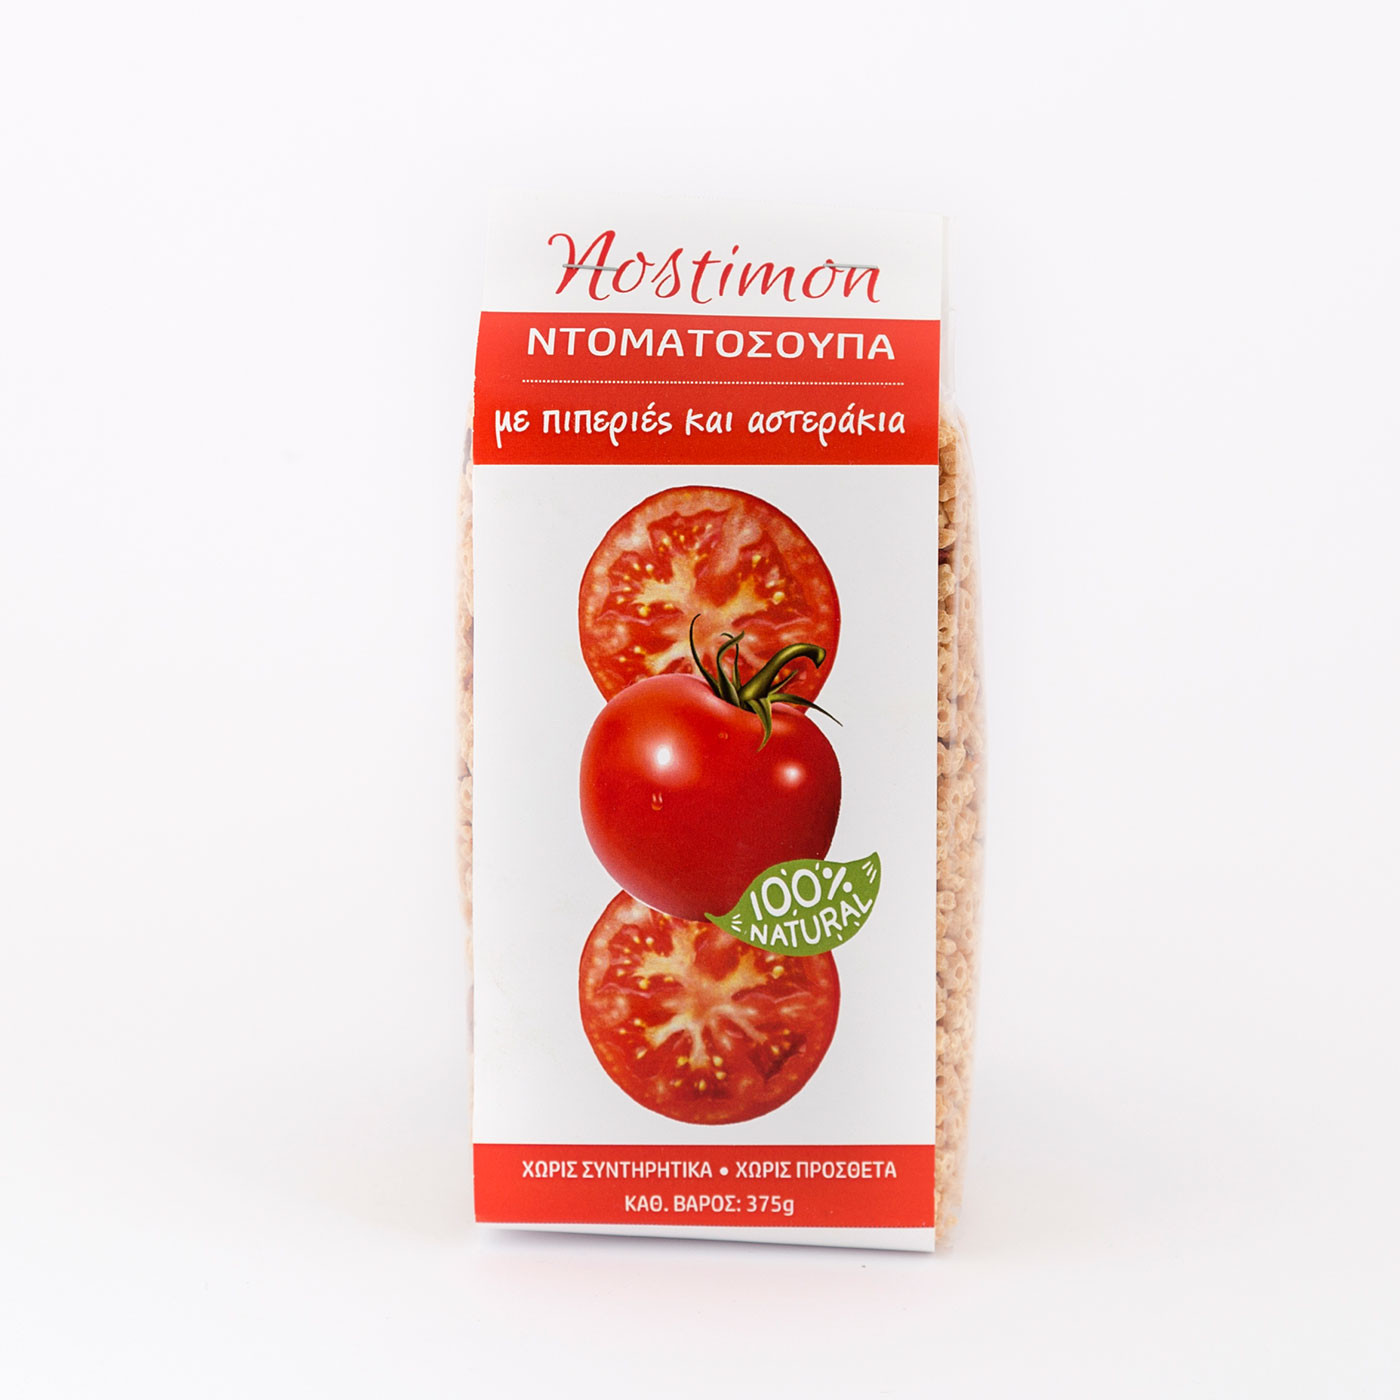 Ντοματόσουπα με πιπεριές και αστεράκια "nostimon" 375 g